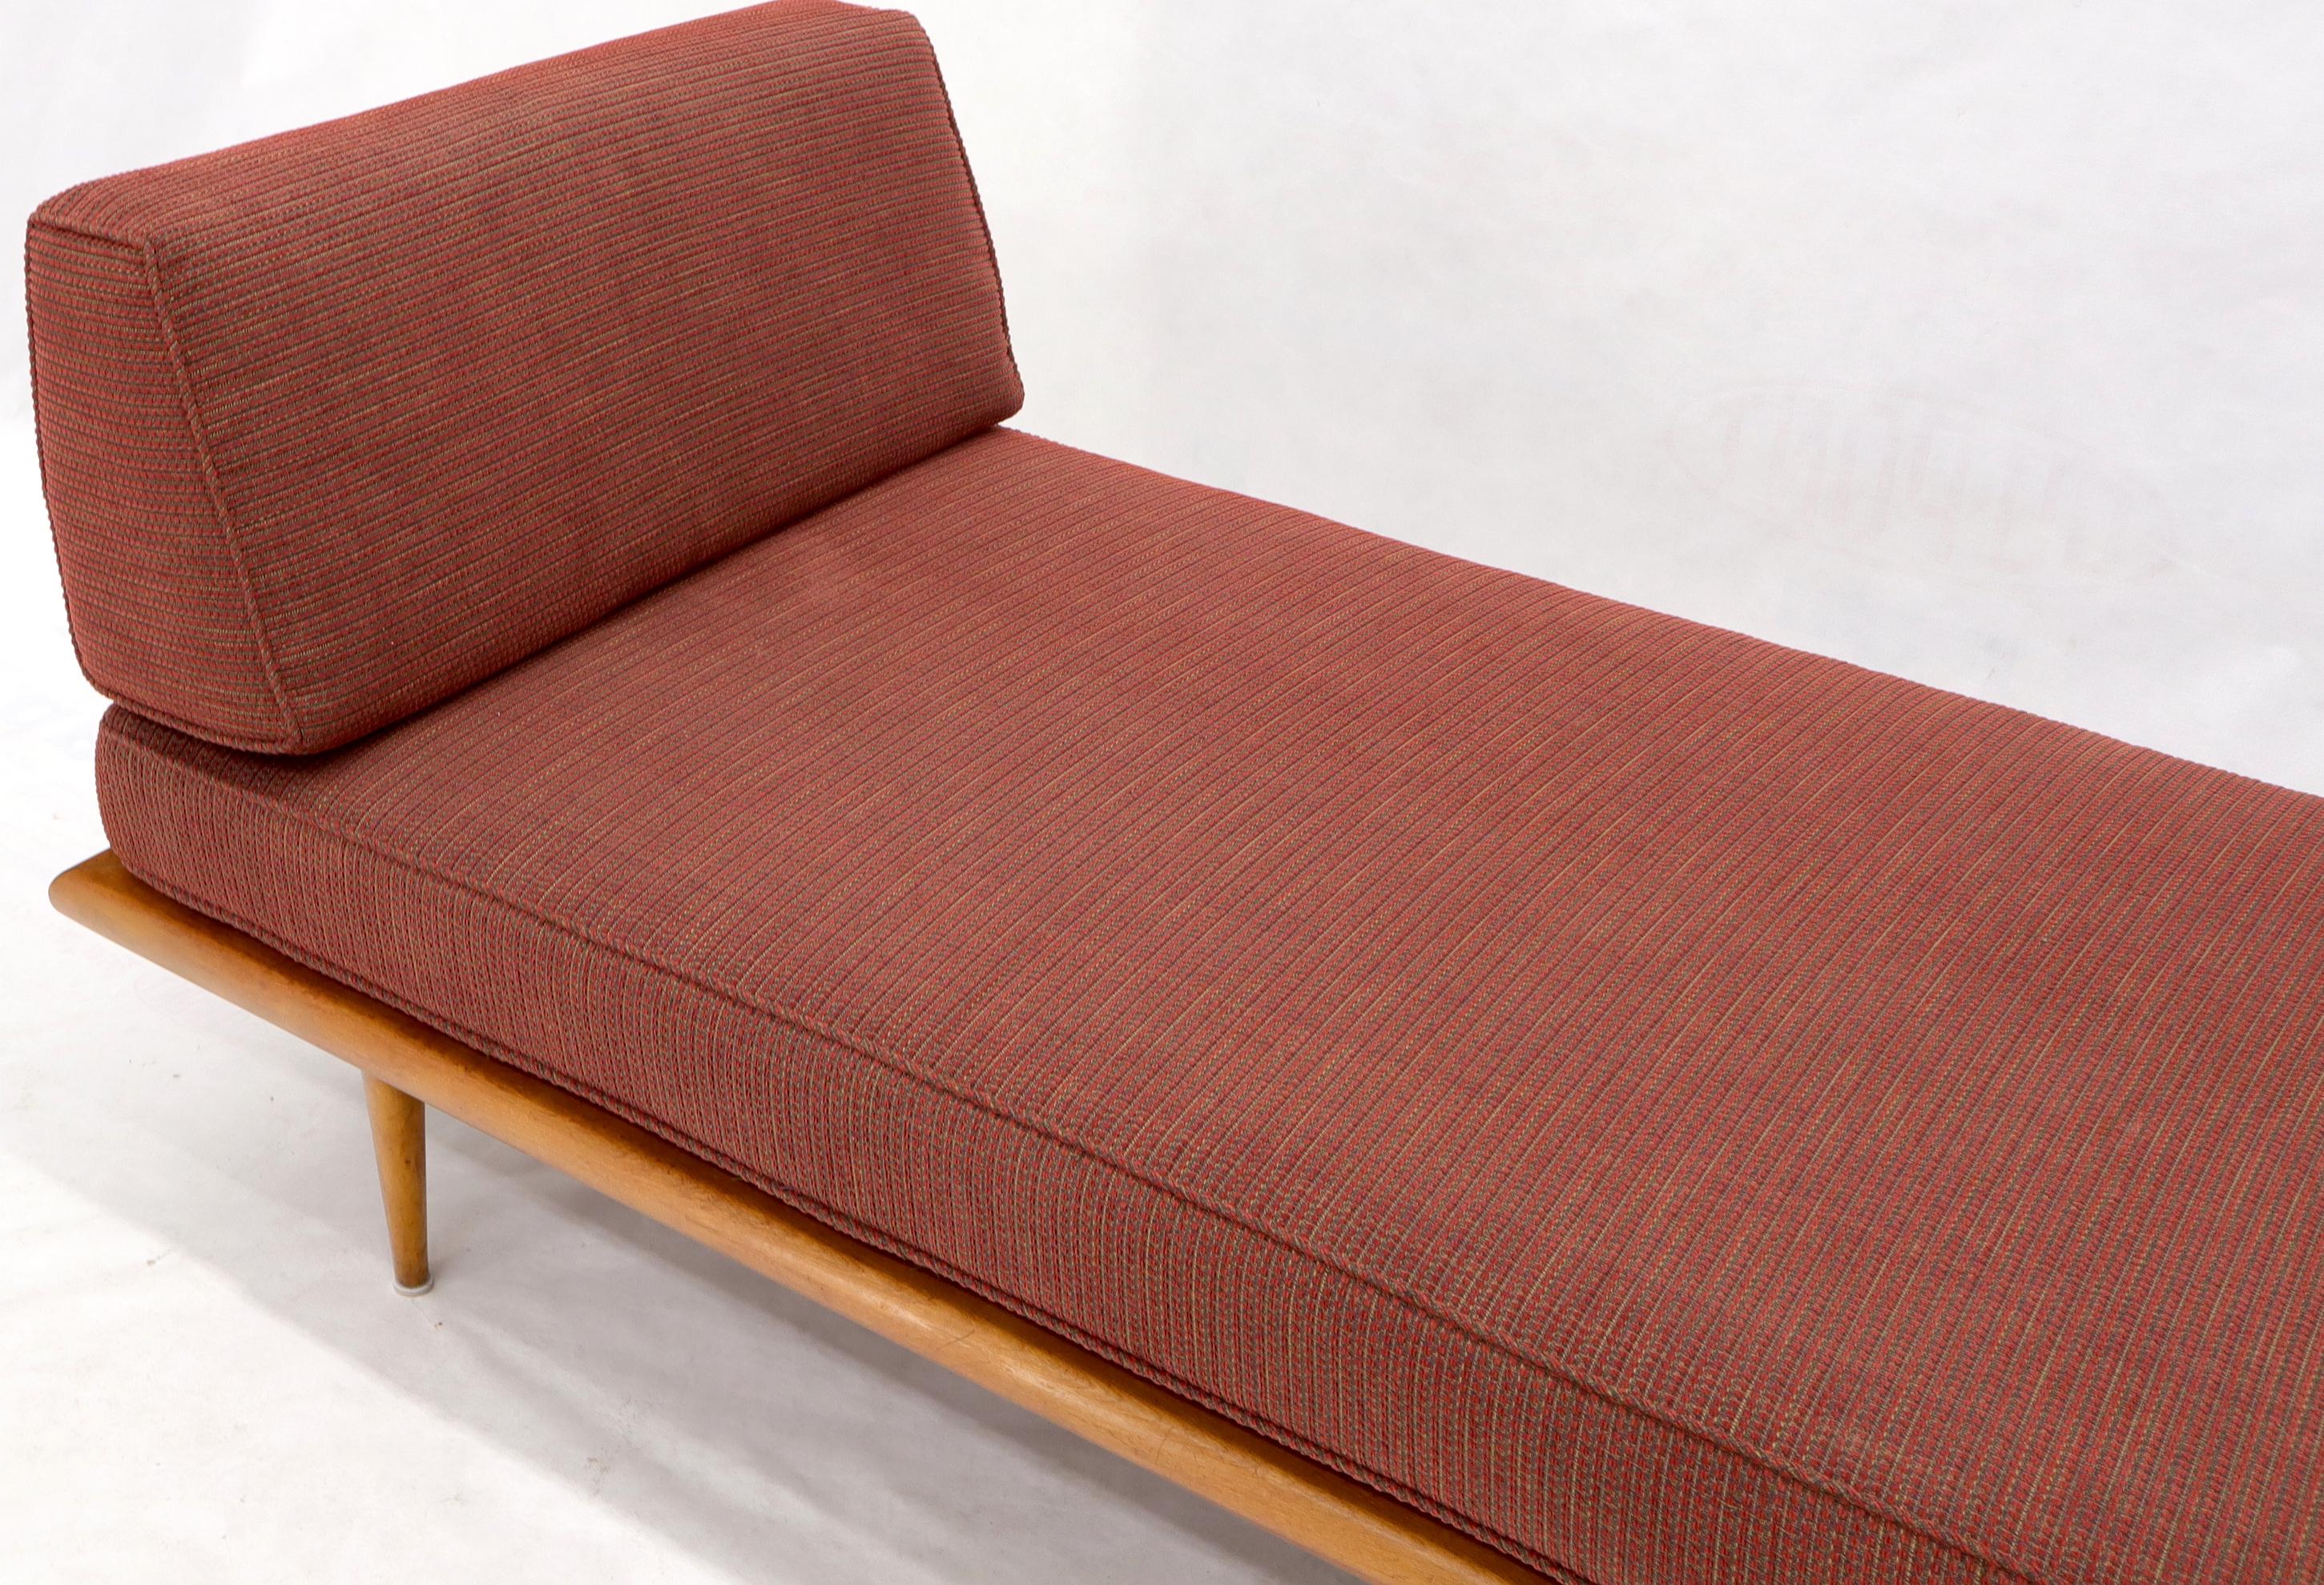 Vintage George Nelson für Herman Miller Daybed Cot Sofa Chaise Lounge (20. Jahrhundert)